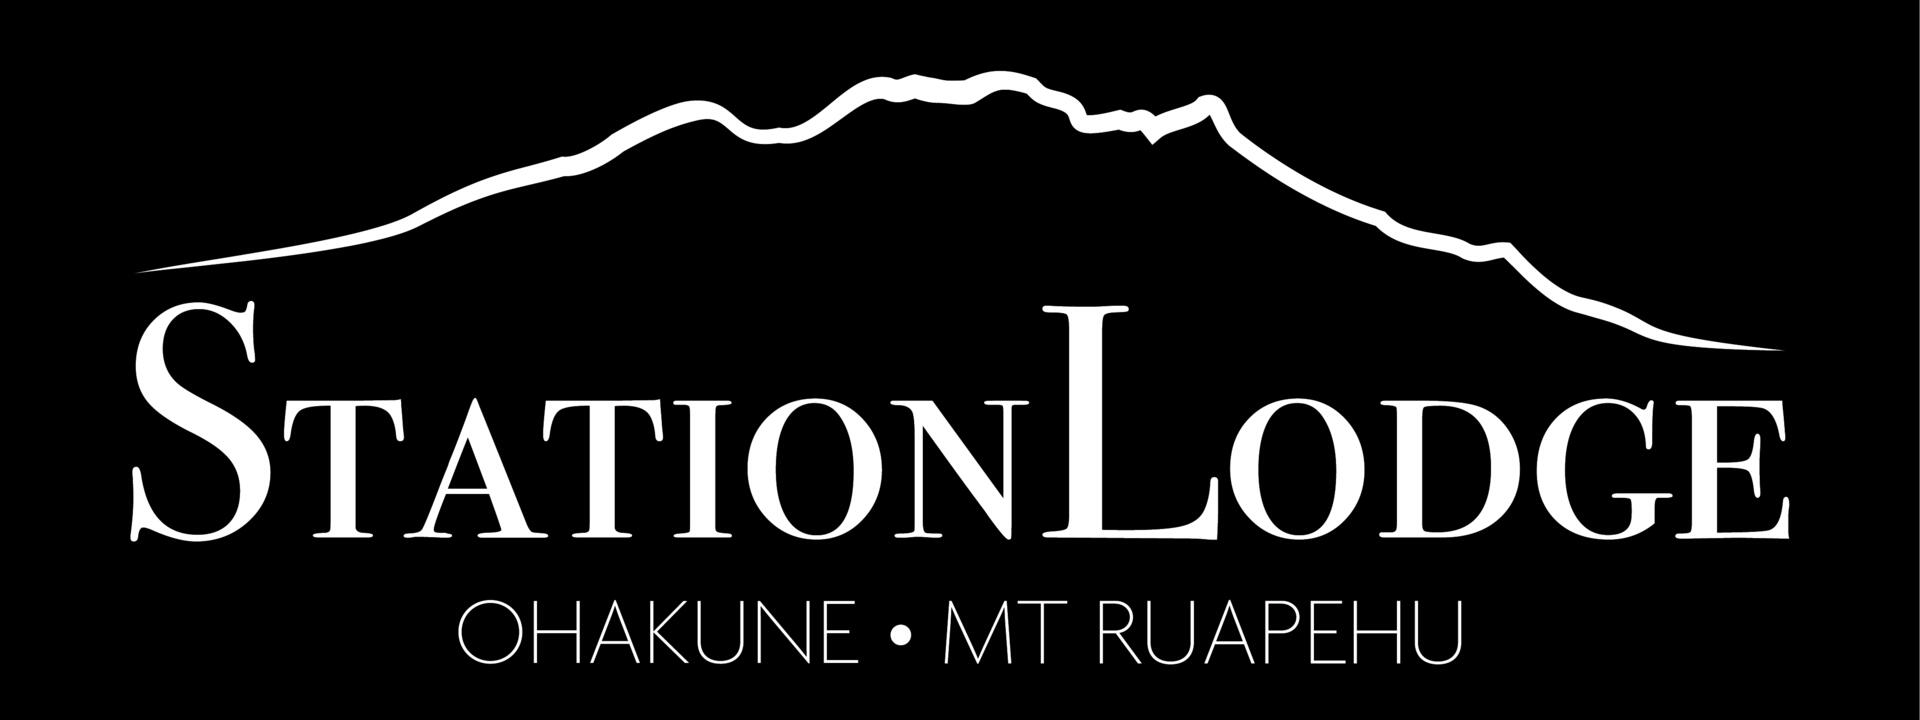 sation-lodge-logo-05_0.jpg